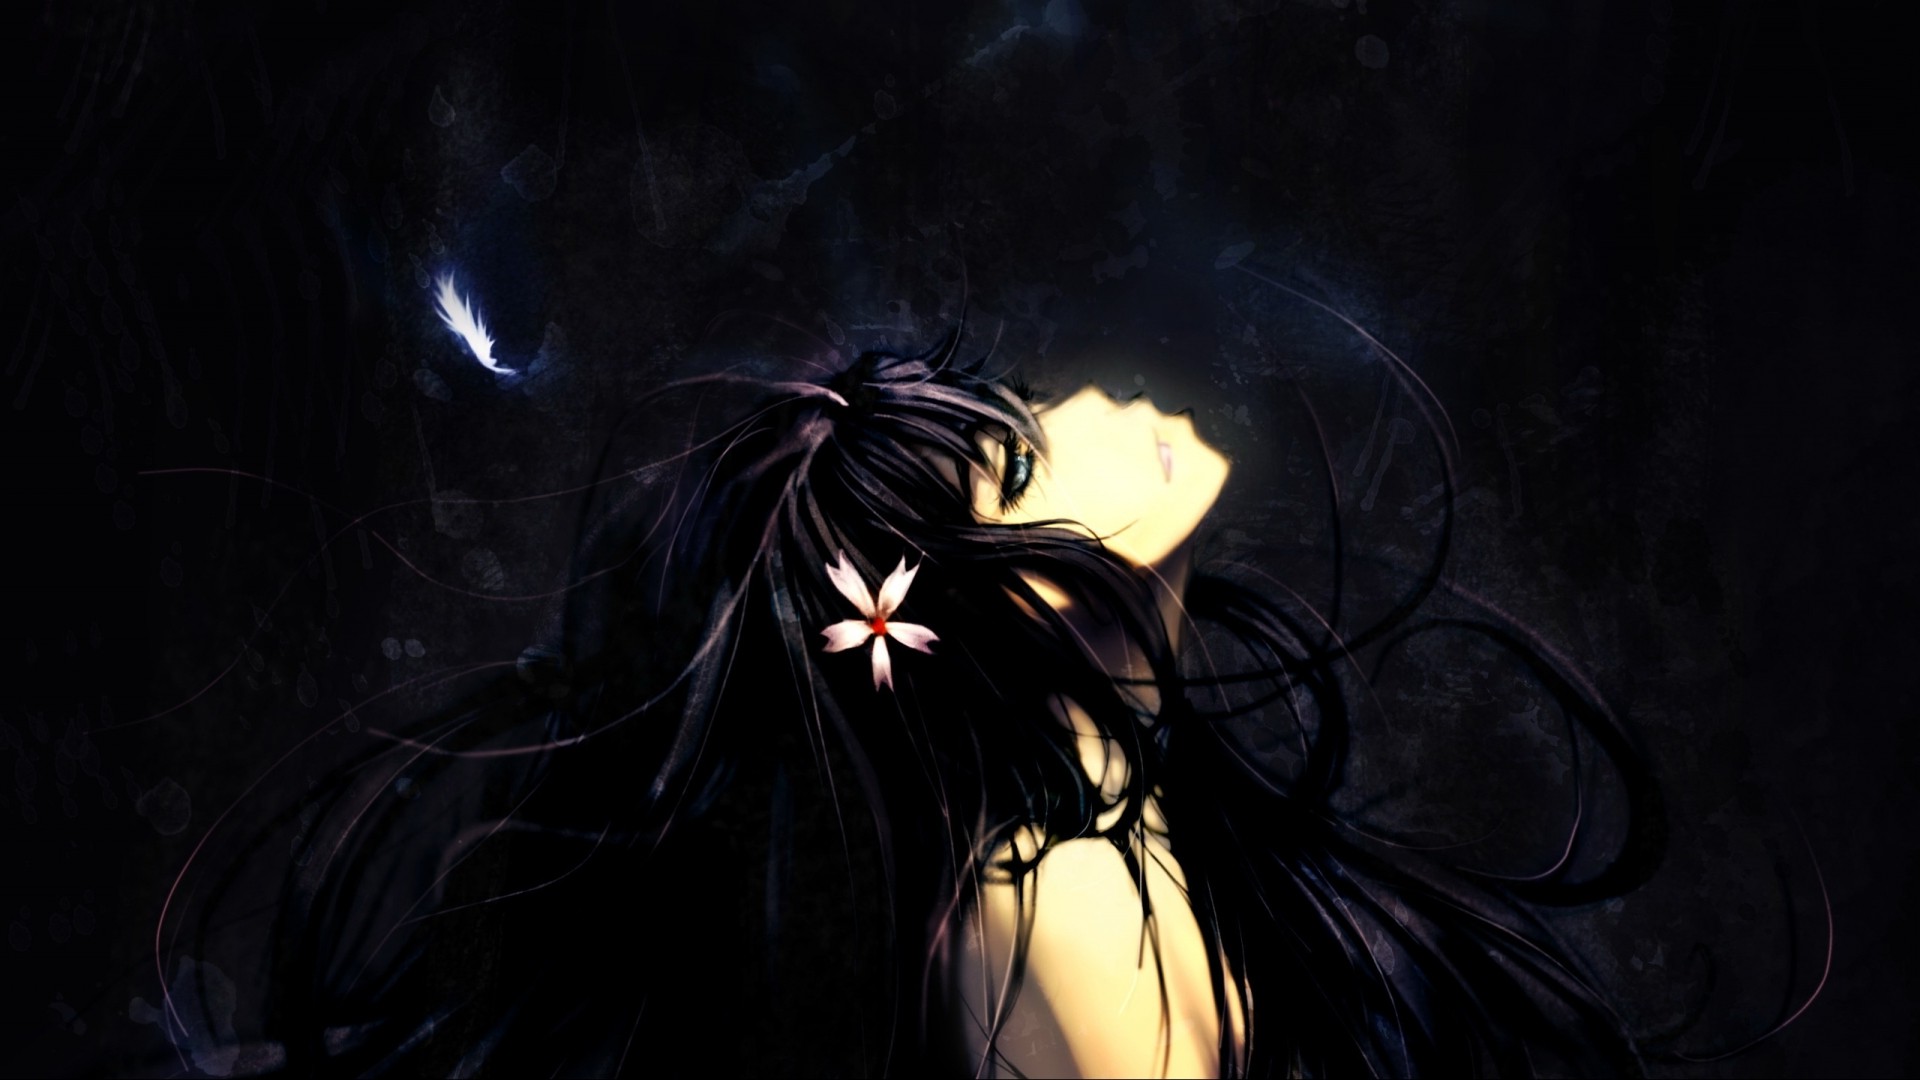 dark anime wallpaper,darkness,light,sky,black hair,night